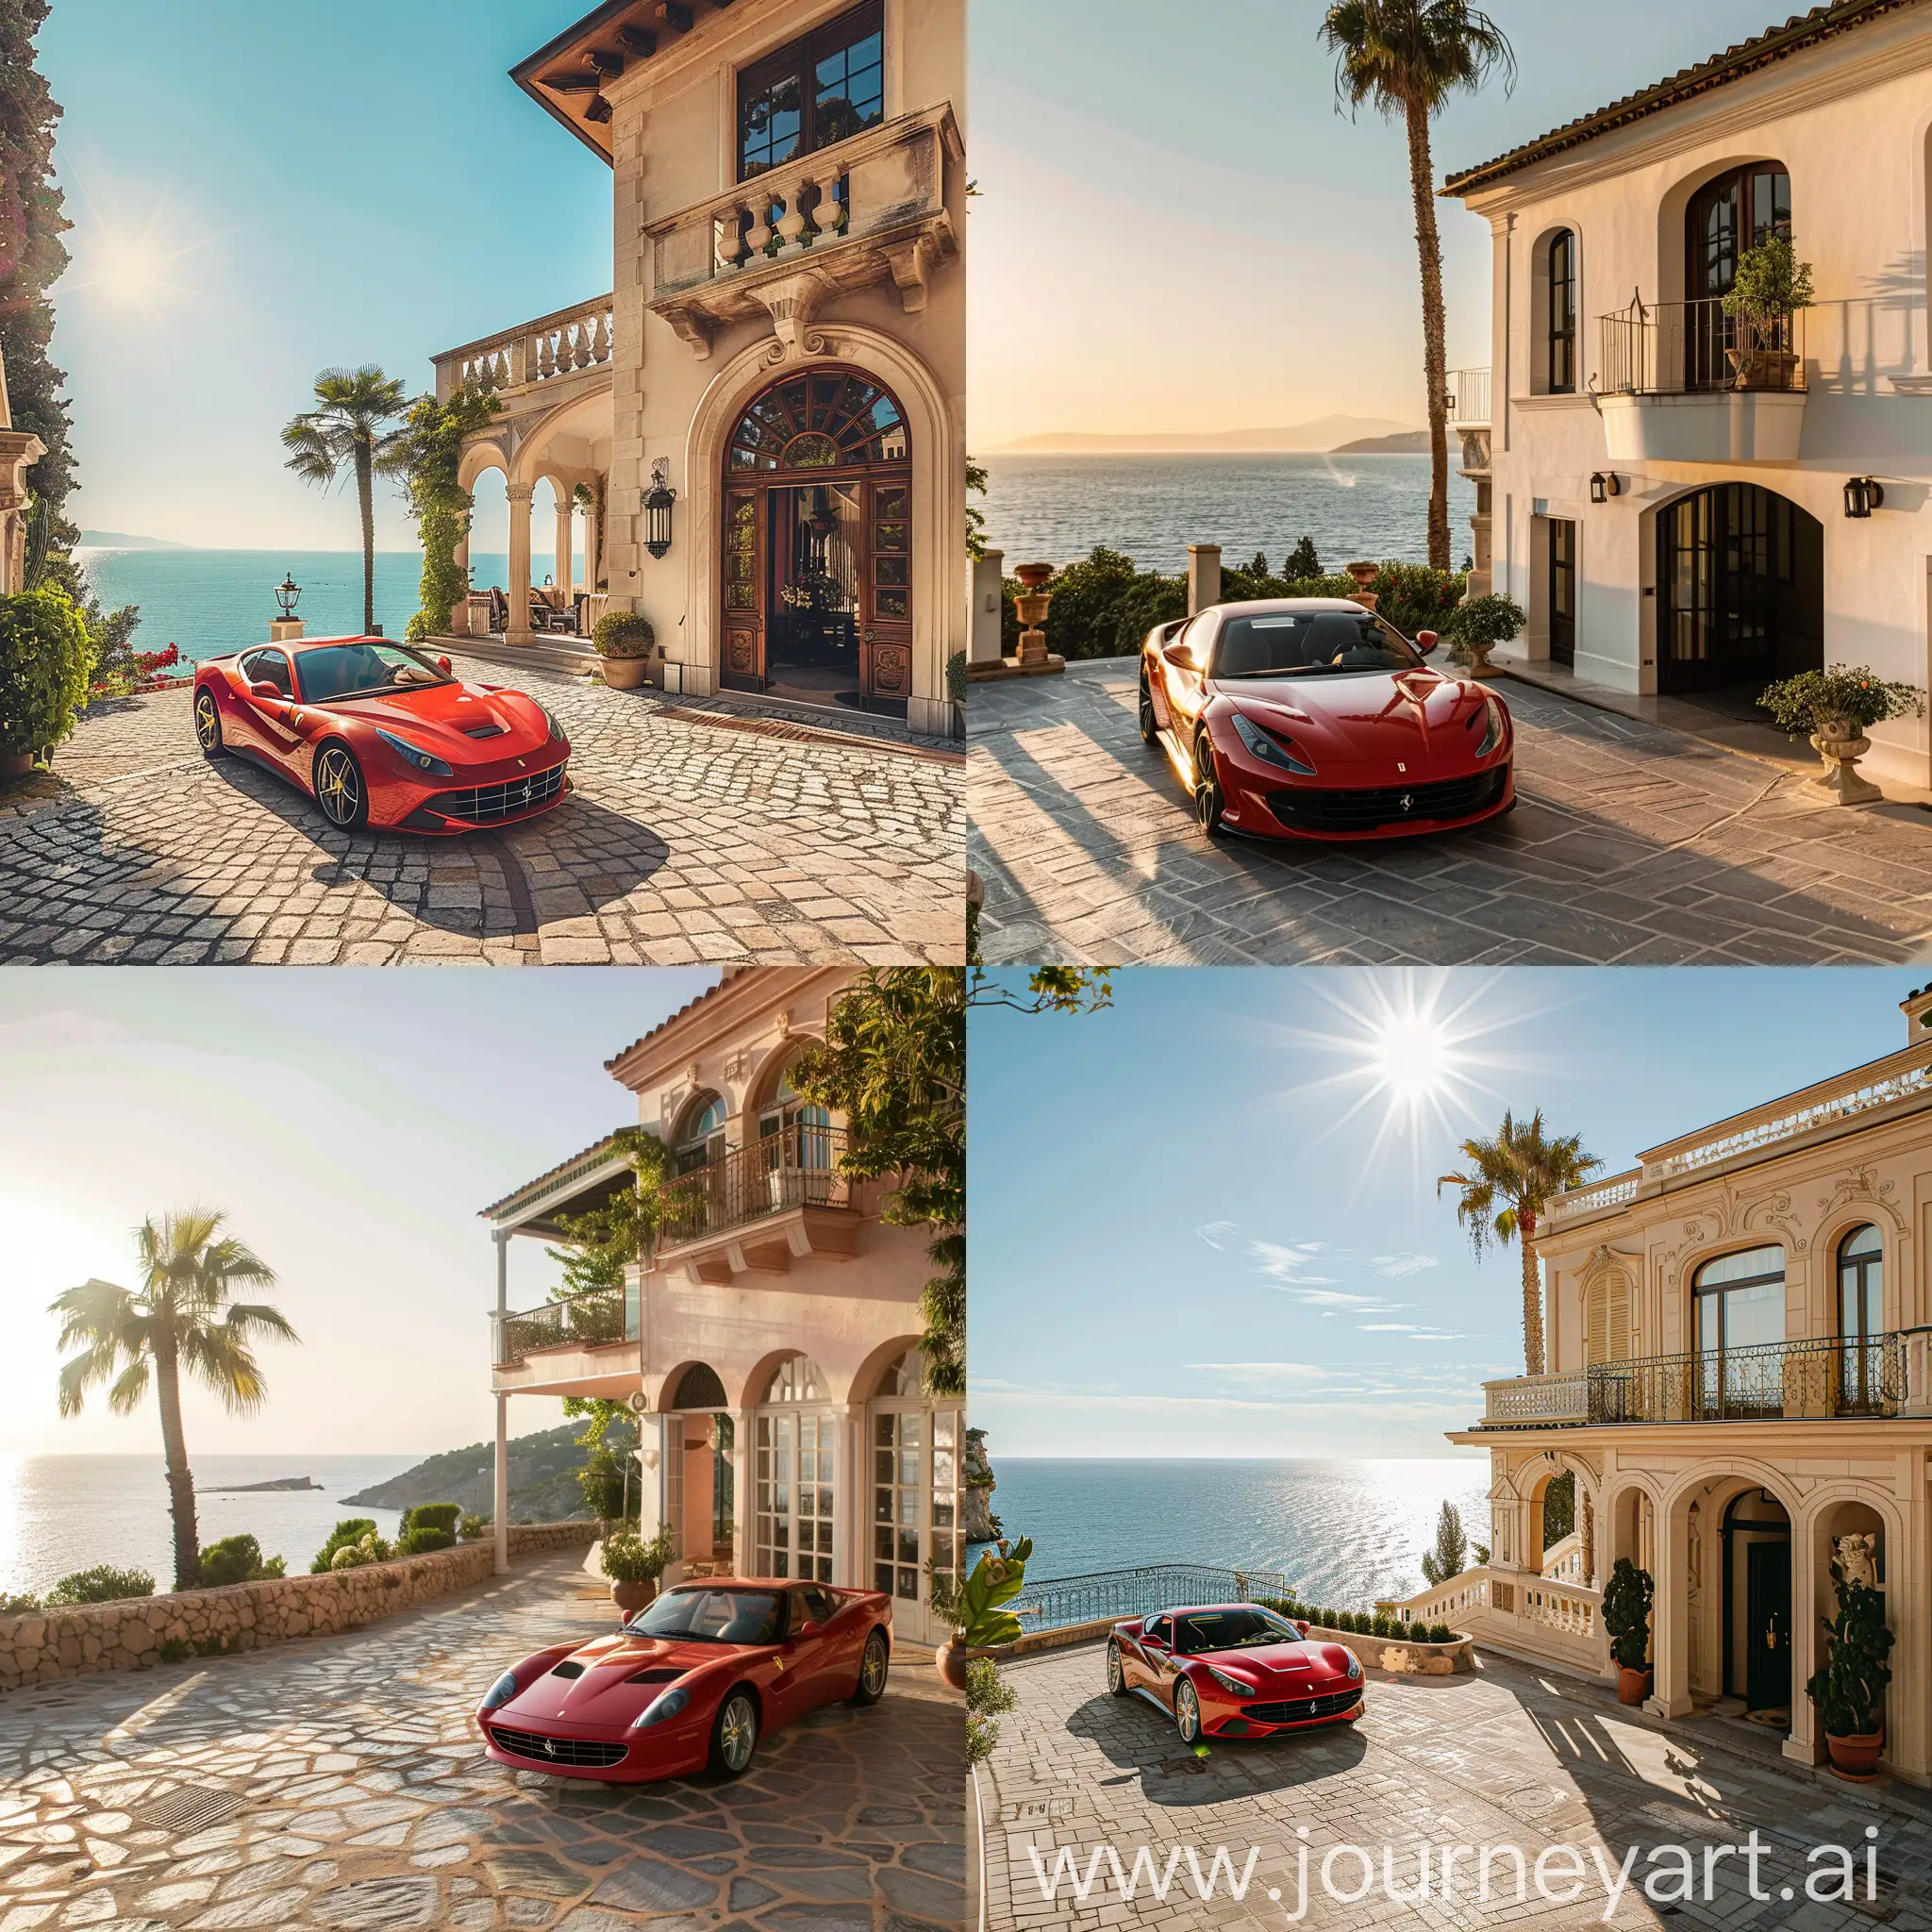 красивая вилла в средиземноморском стиле на берегу моря ласковое солнце рядом с подъездом дома припаркована Ferrari


